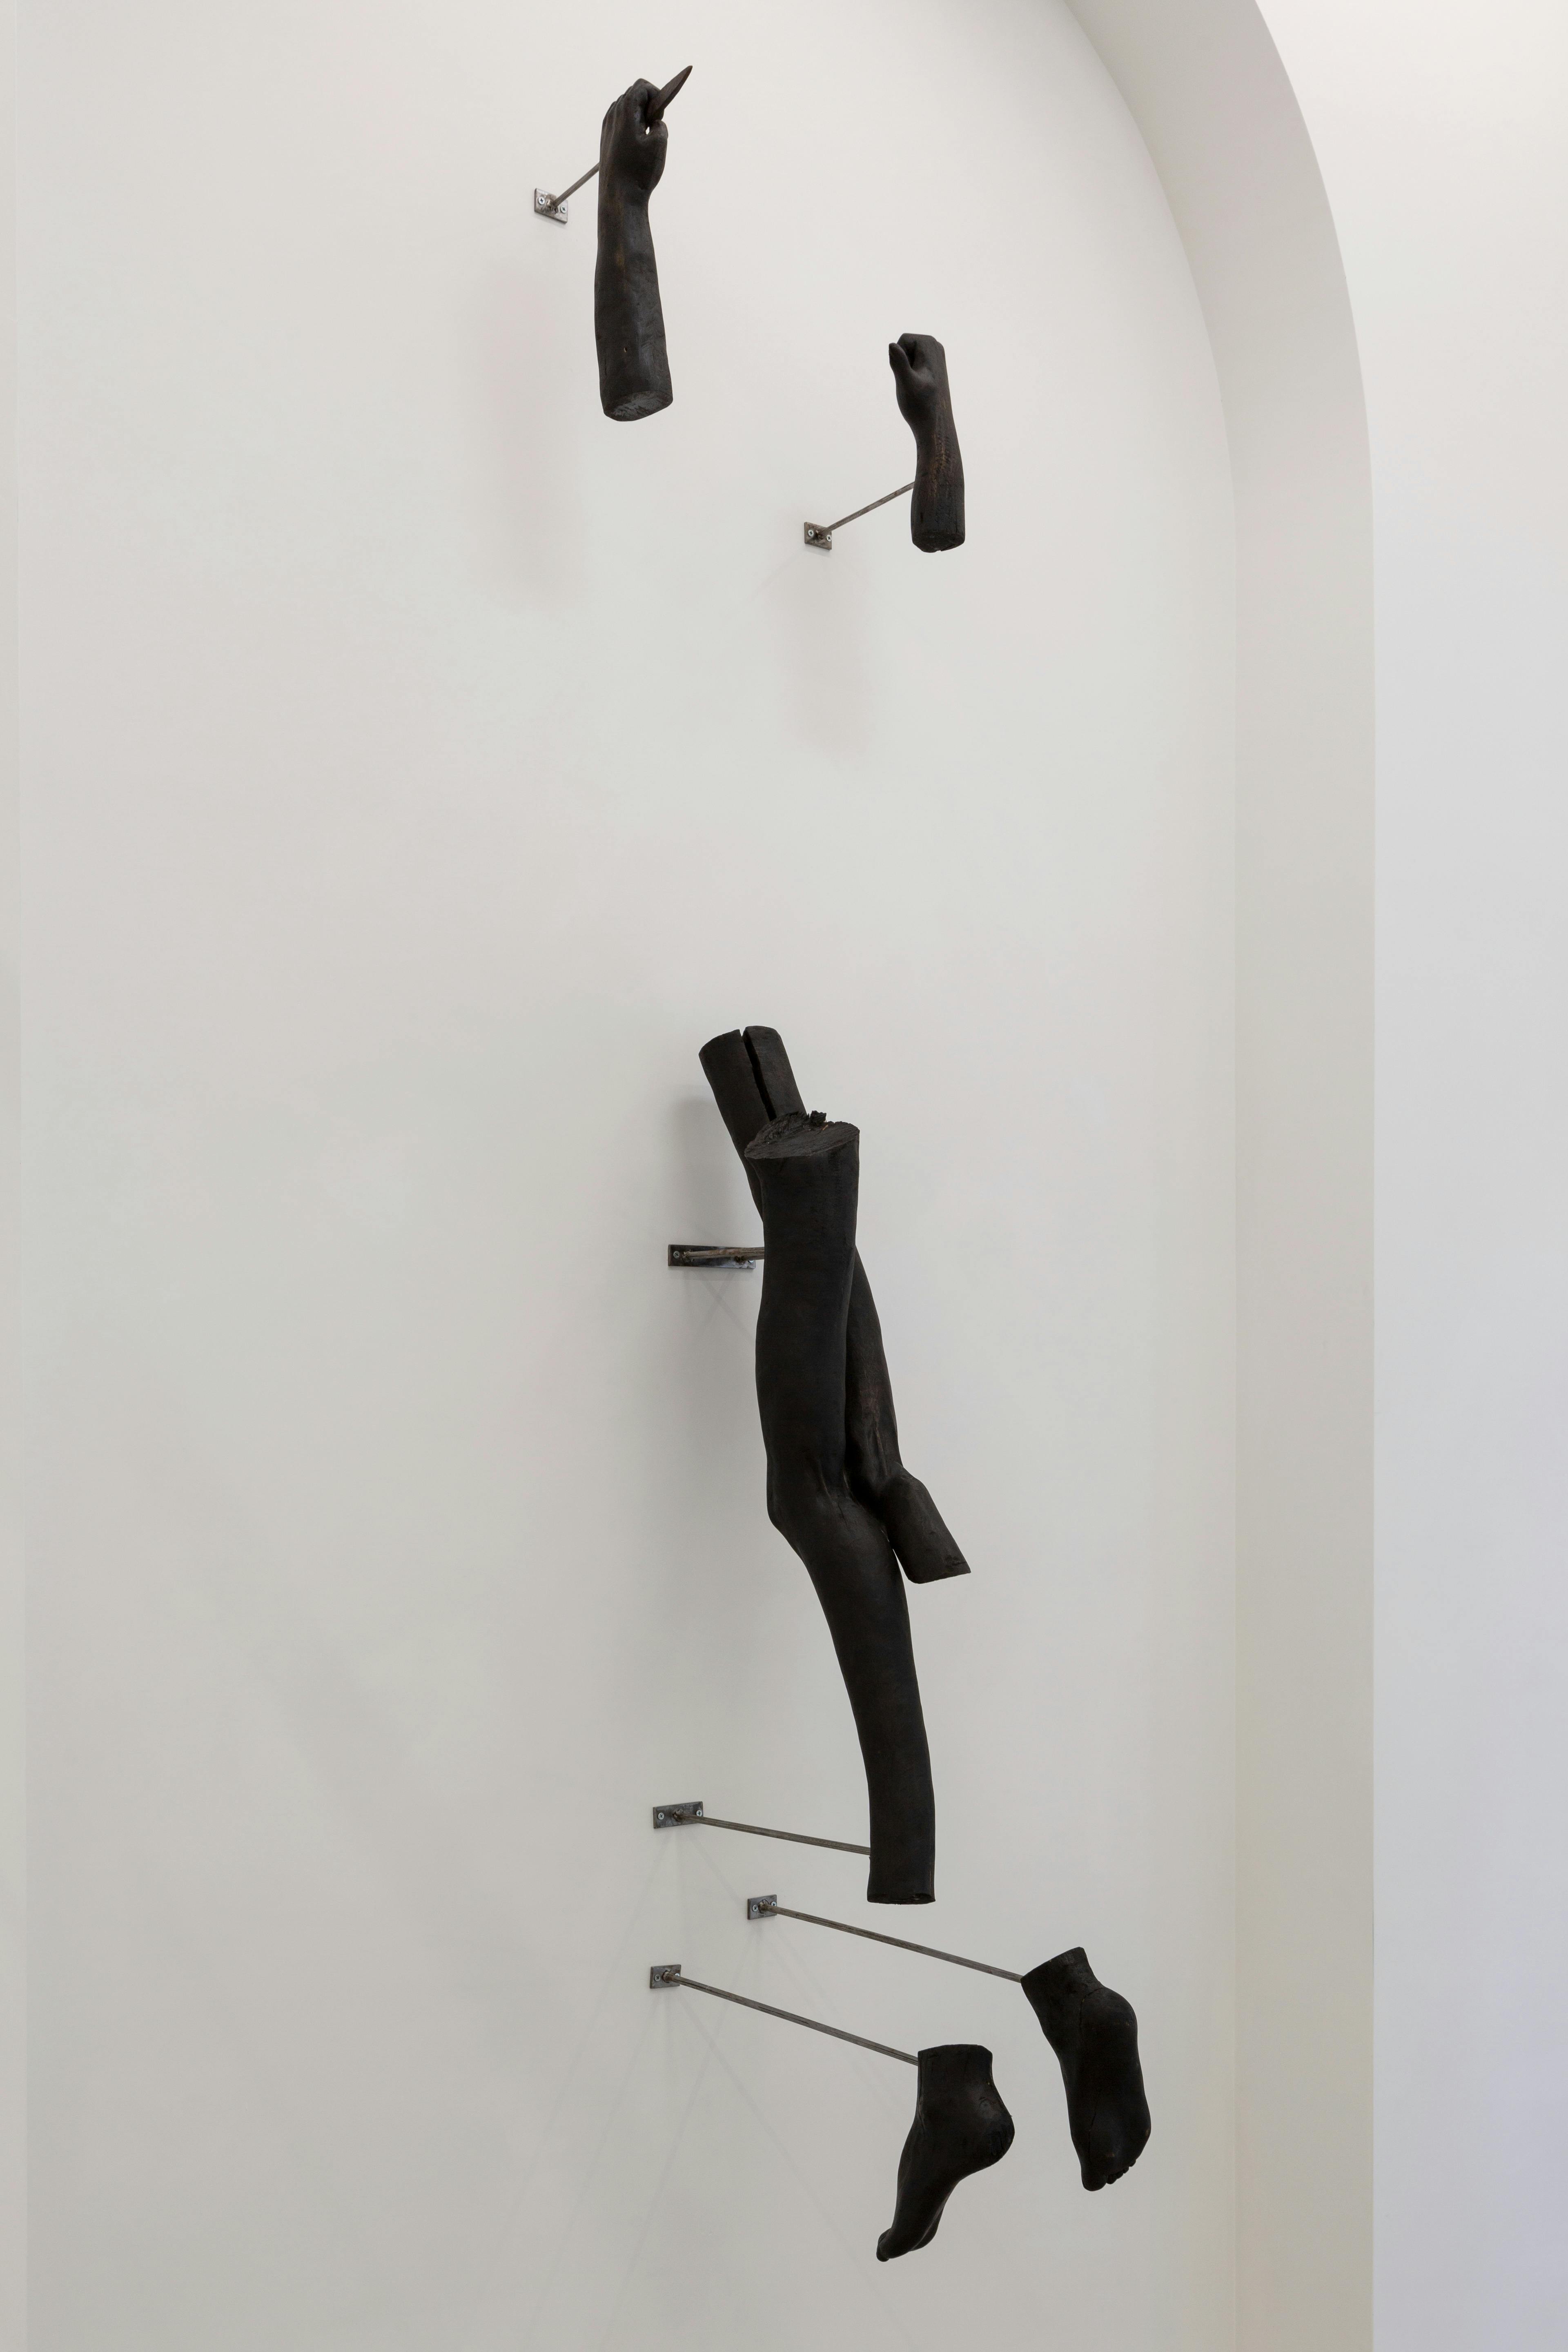 Corpo randagio (tentativo d’abbandono), Jacopo Naccarato, 2023, legno, ferro, inchiostro e cera, misure ambientali